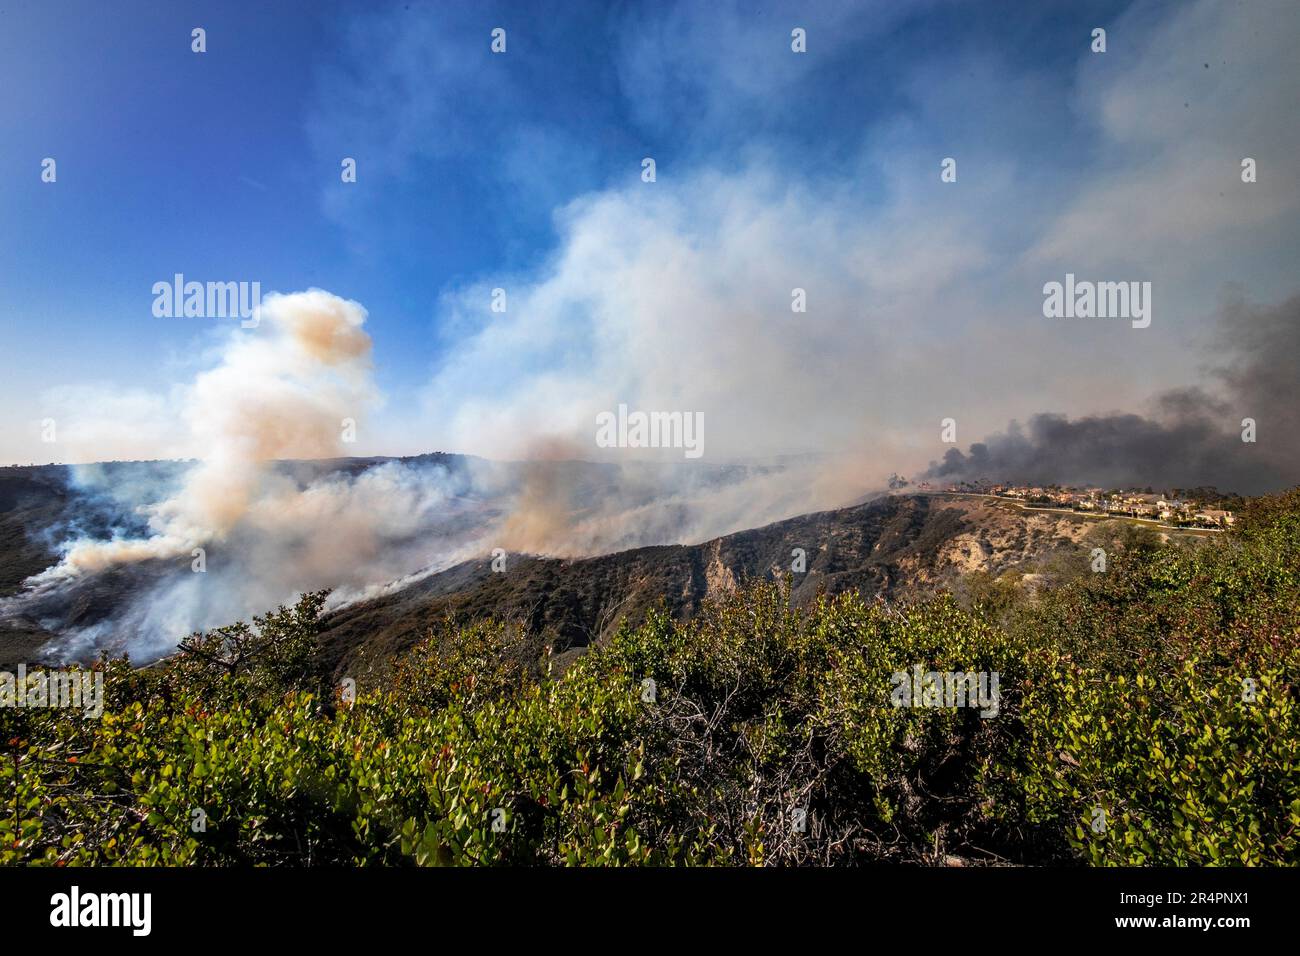 Durch Wind und trockene, entzündbare Pflanzen breitet sich ein Bürstenfeuer einen Hügel hinauf, um eine geplante Luxusgemeinde in Laguna Niguel, Kalifornien, zu bedrohen. Stockfoto